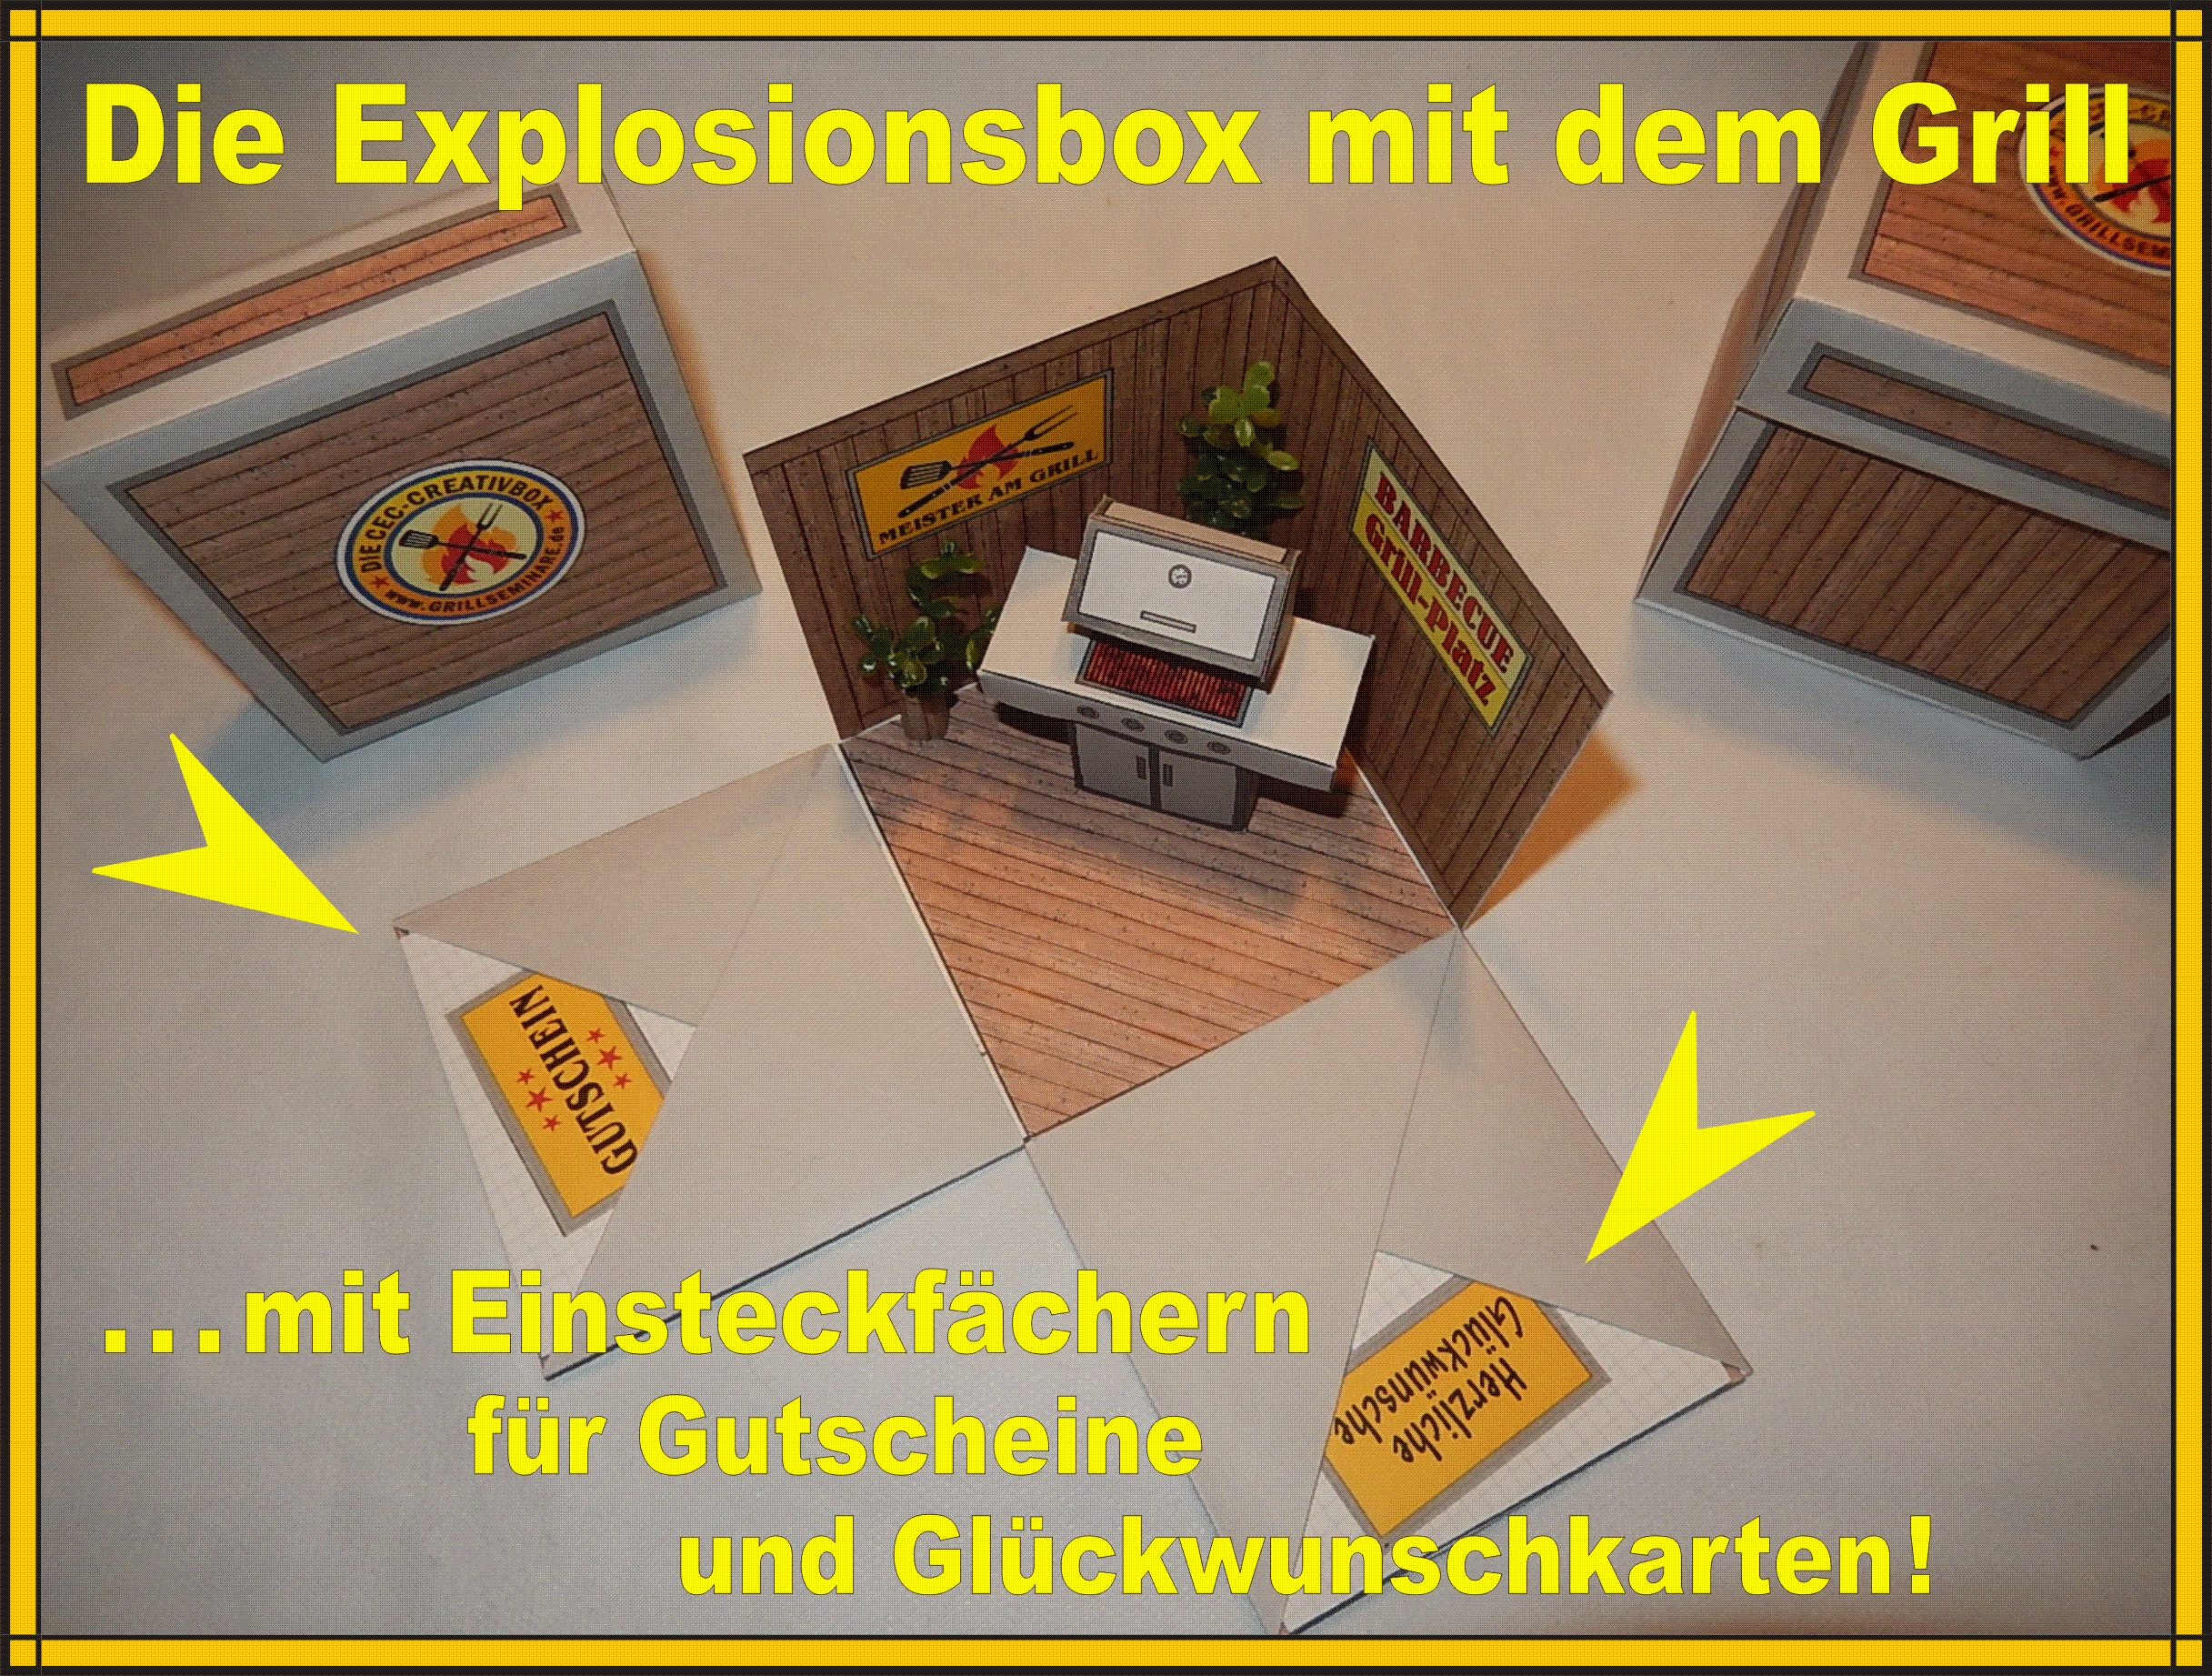 Explosionsbox mit Grill als Geschenk für Männer